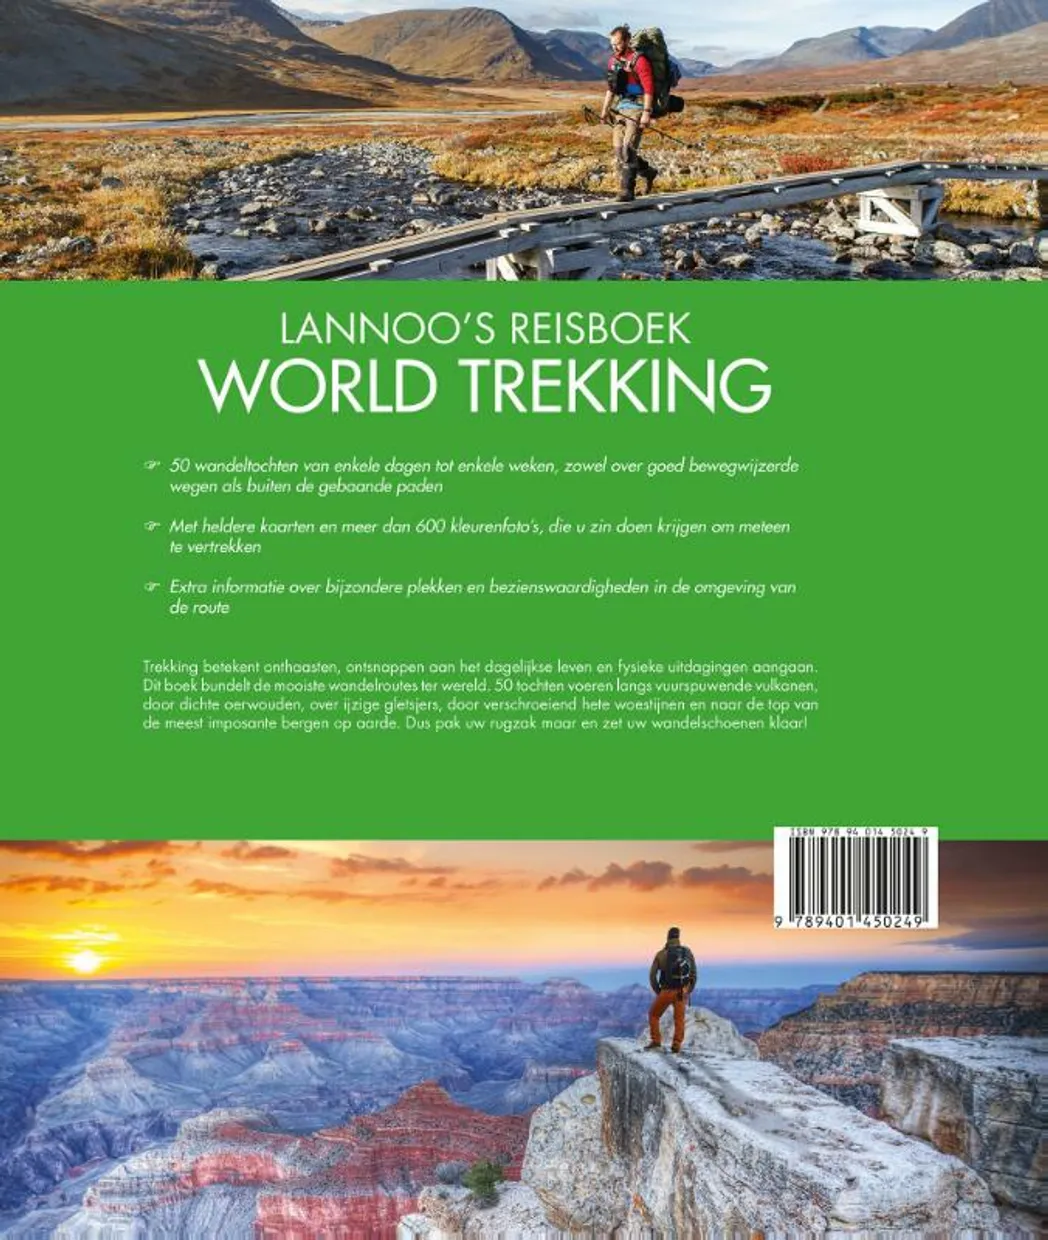 Lannoo's Reisboek World Trekking